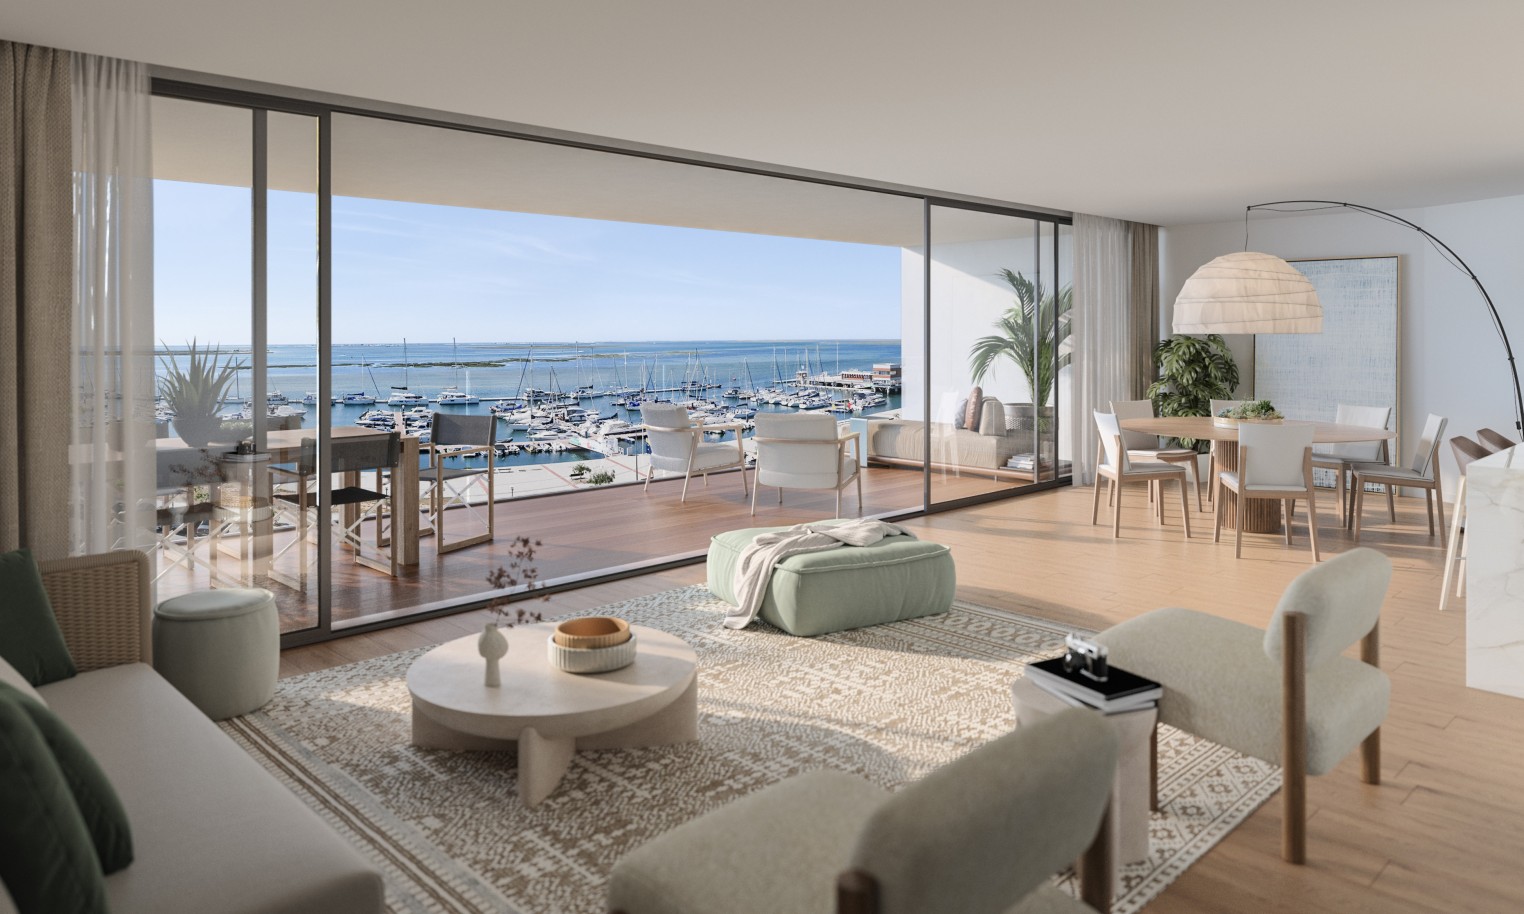 Appartements neufs avec vue sur mer, 1, 2 & 3 chambres, à vendre à Olhão, Algarve_244557